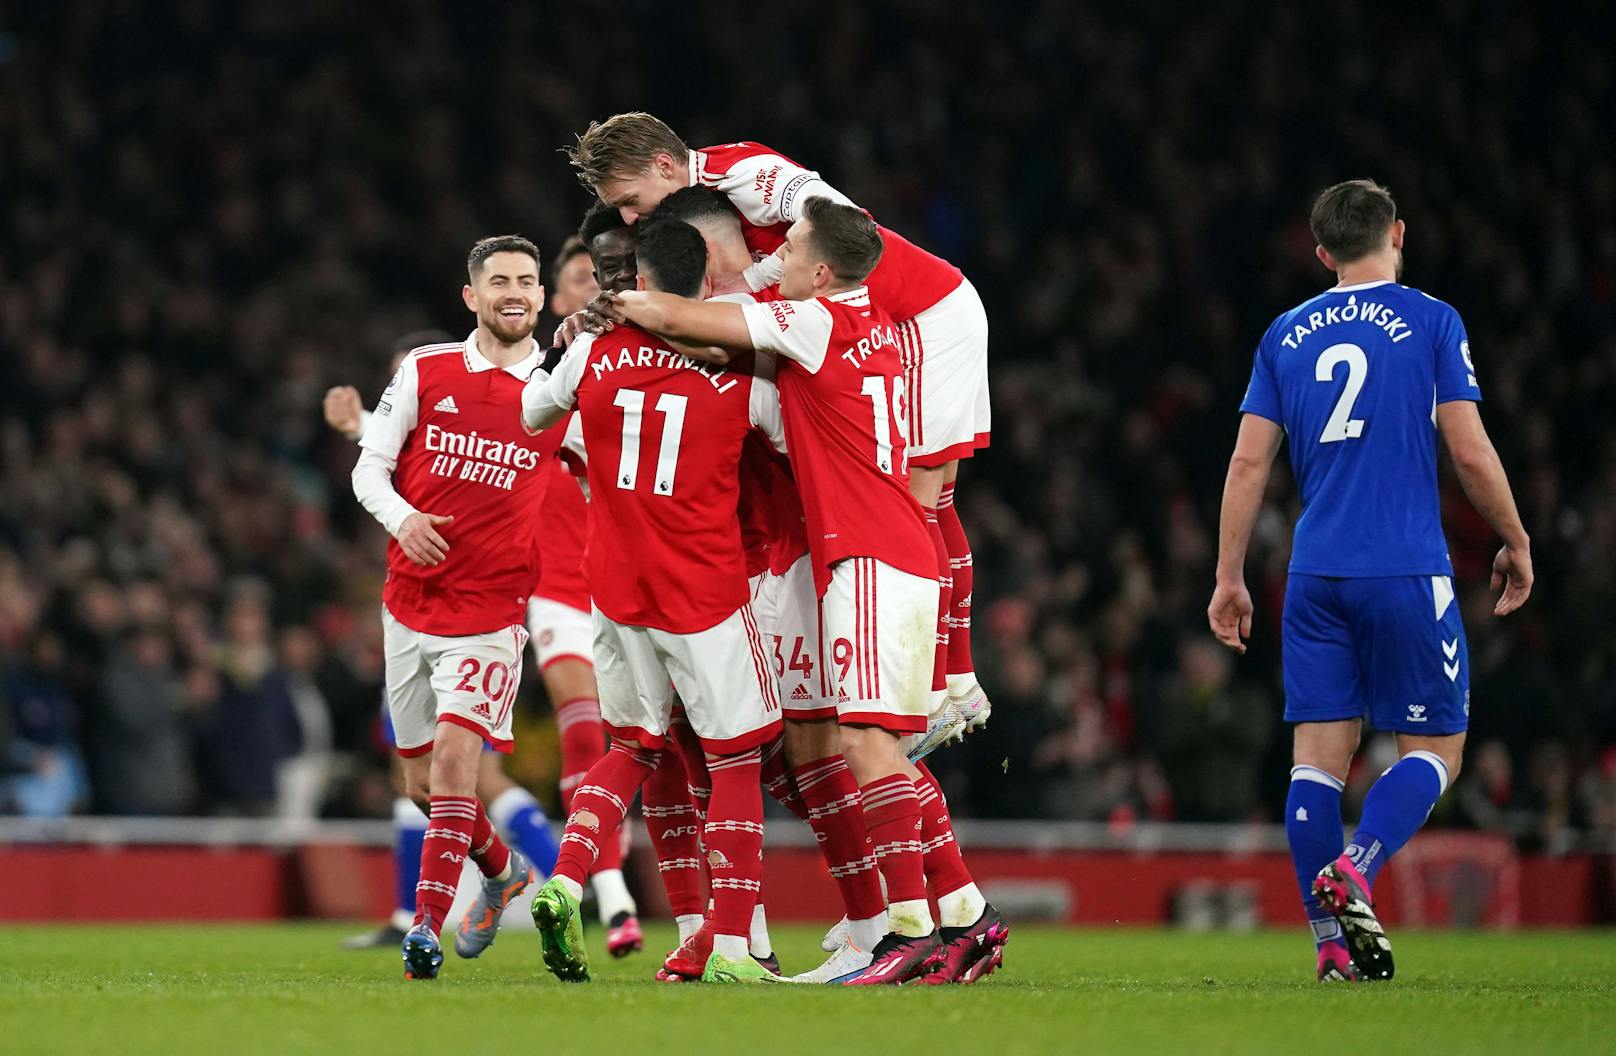 Arsenal London feierte einen kaum gefährdeten Erfolg gegen Everton. 